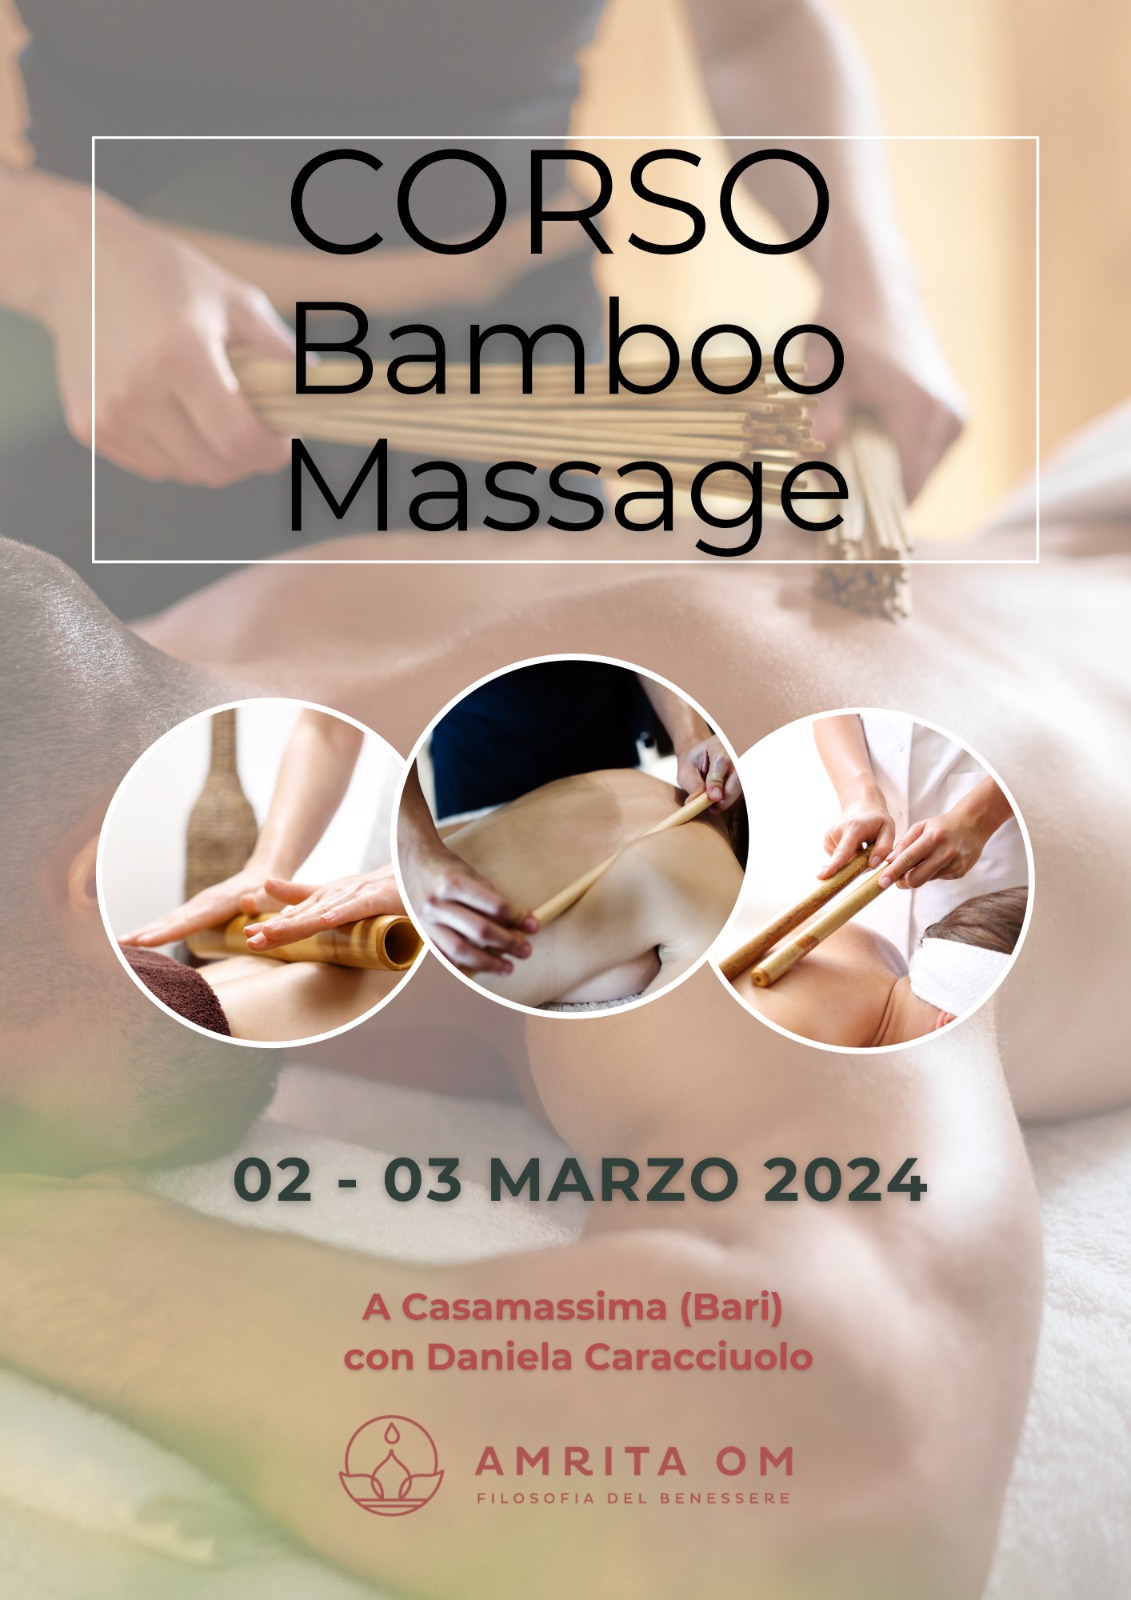 Corso Bamboo Massage 2-3 Marzo 2024 con Daniela Caracciuolo a Casamassima (BA) presso @ AMRITA OM